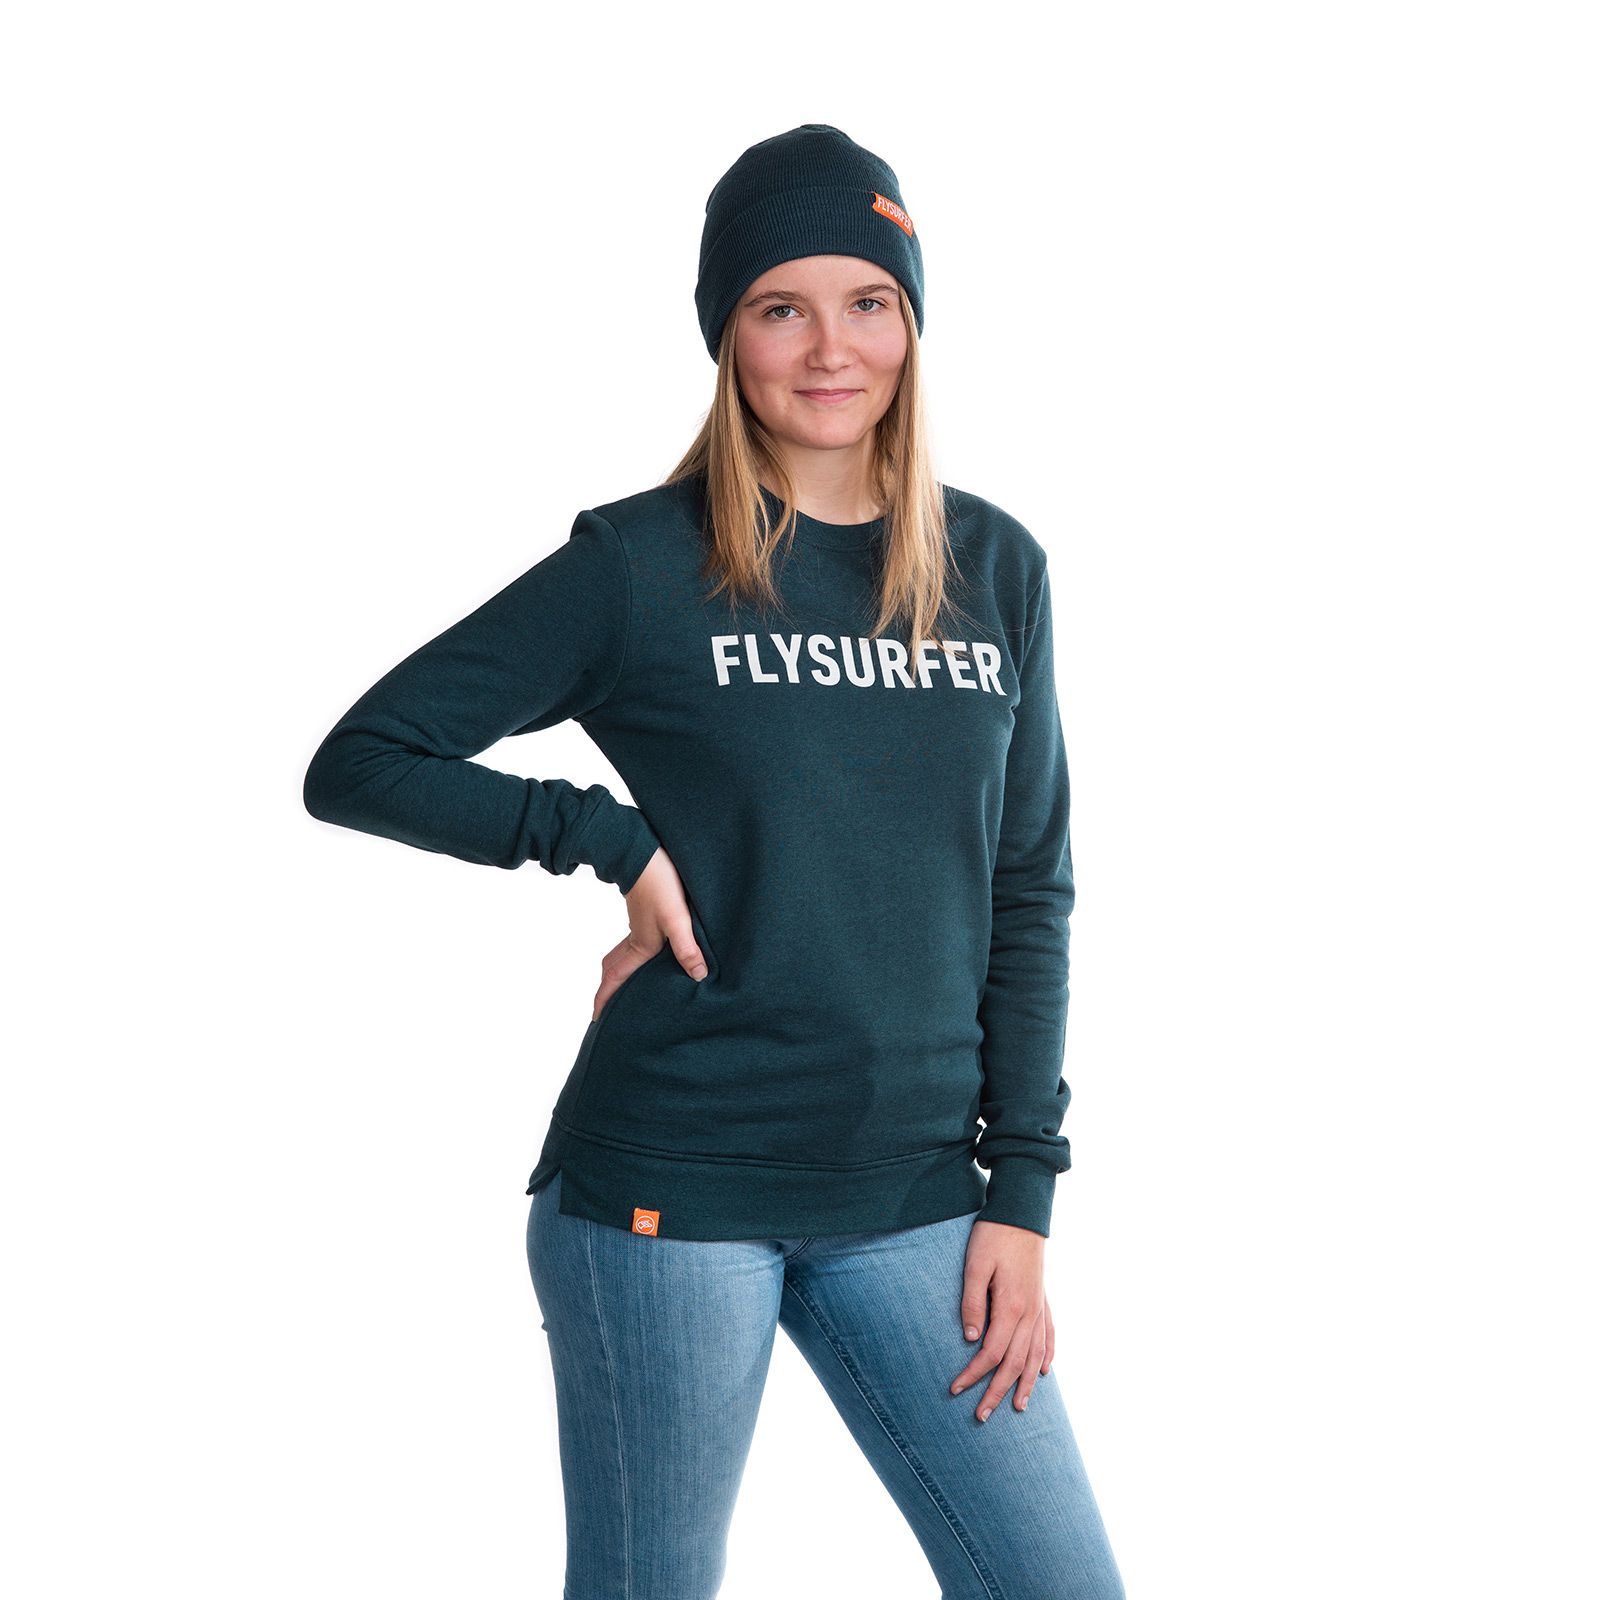 FLYSURFER Sweater Team Unisex